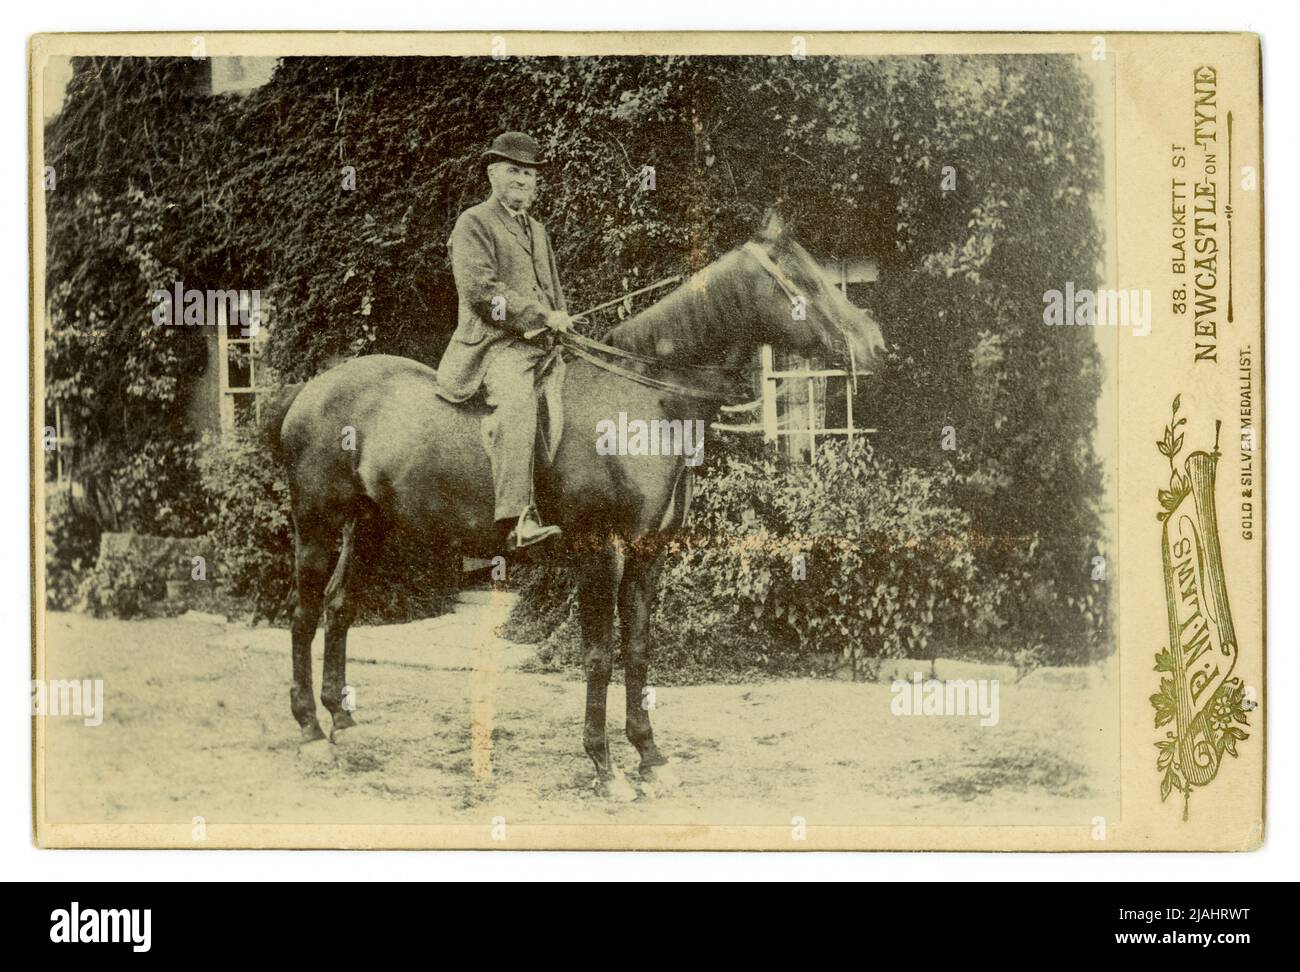 Original carte de charme en plein air portrait d'un homme de campagne sur son cheval à l'extérieur de sa maison, photographié par P.M. Laws, 38 Blackett St. Newcastle-upon-Tyne, Angleterre, Royaume-Uni fin 1880, début 1890. Banque D'Images